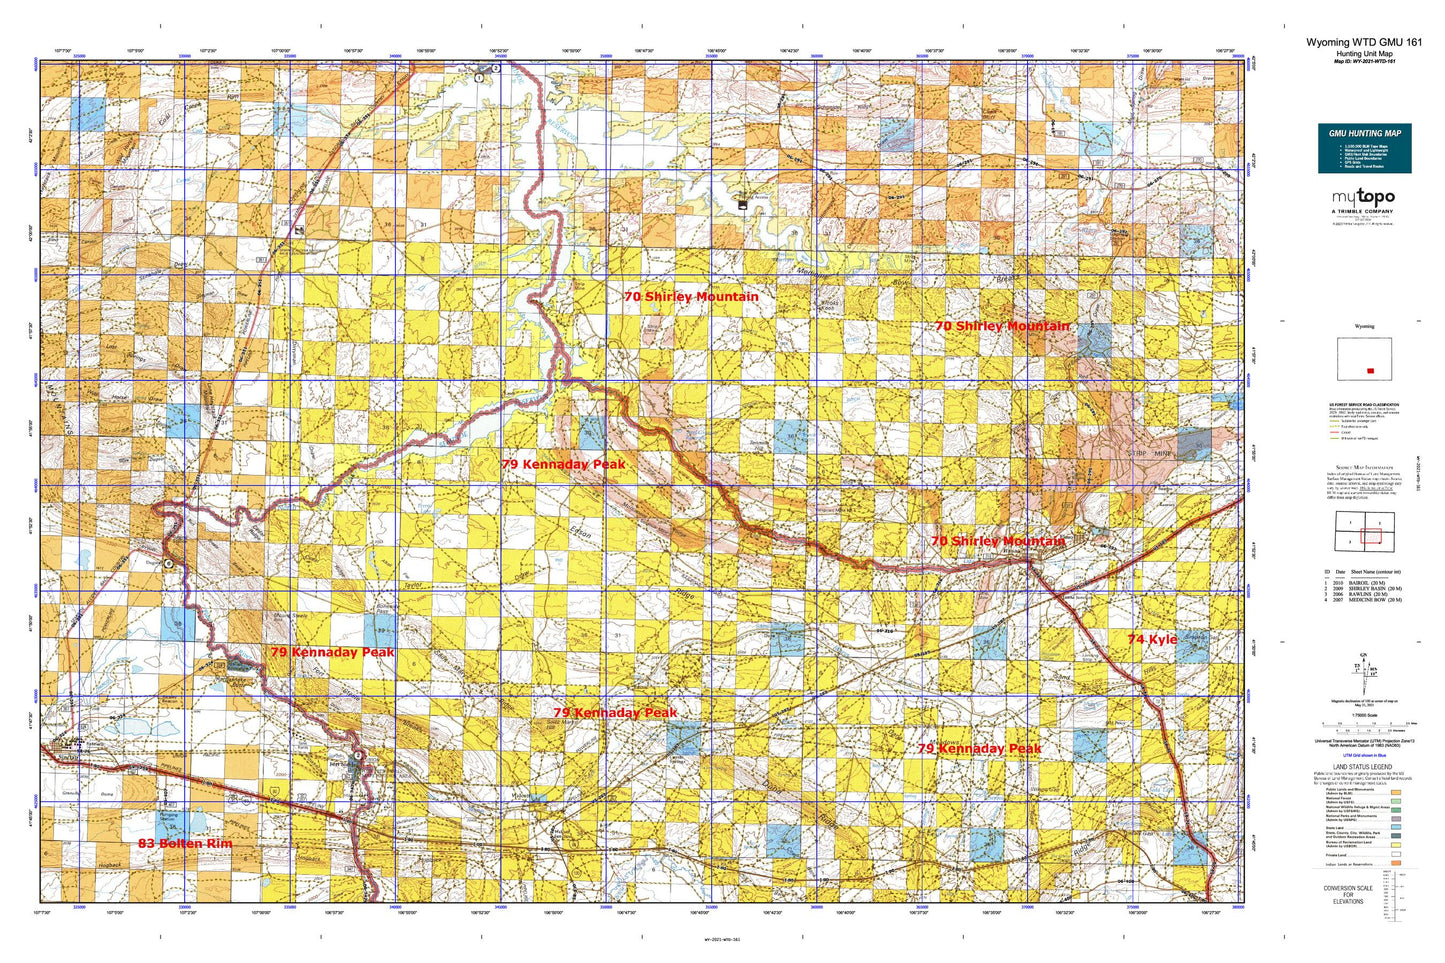 Wyoming Whitetail Deer GMU 161 Map Image